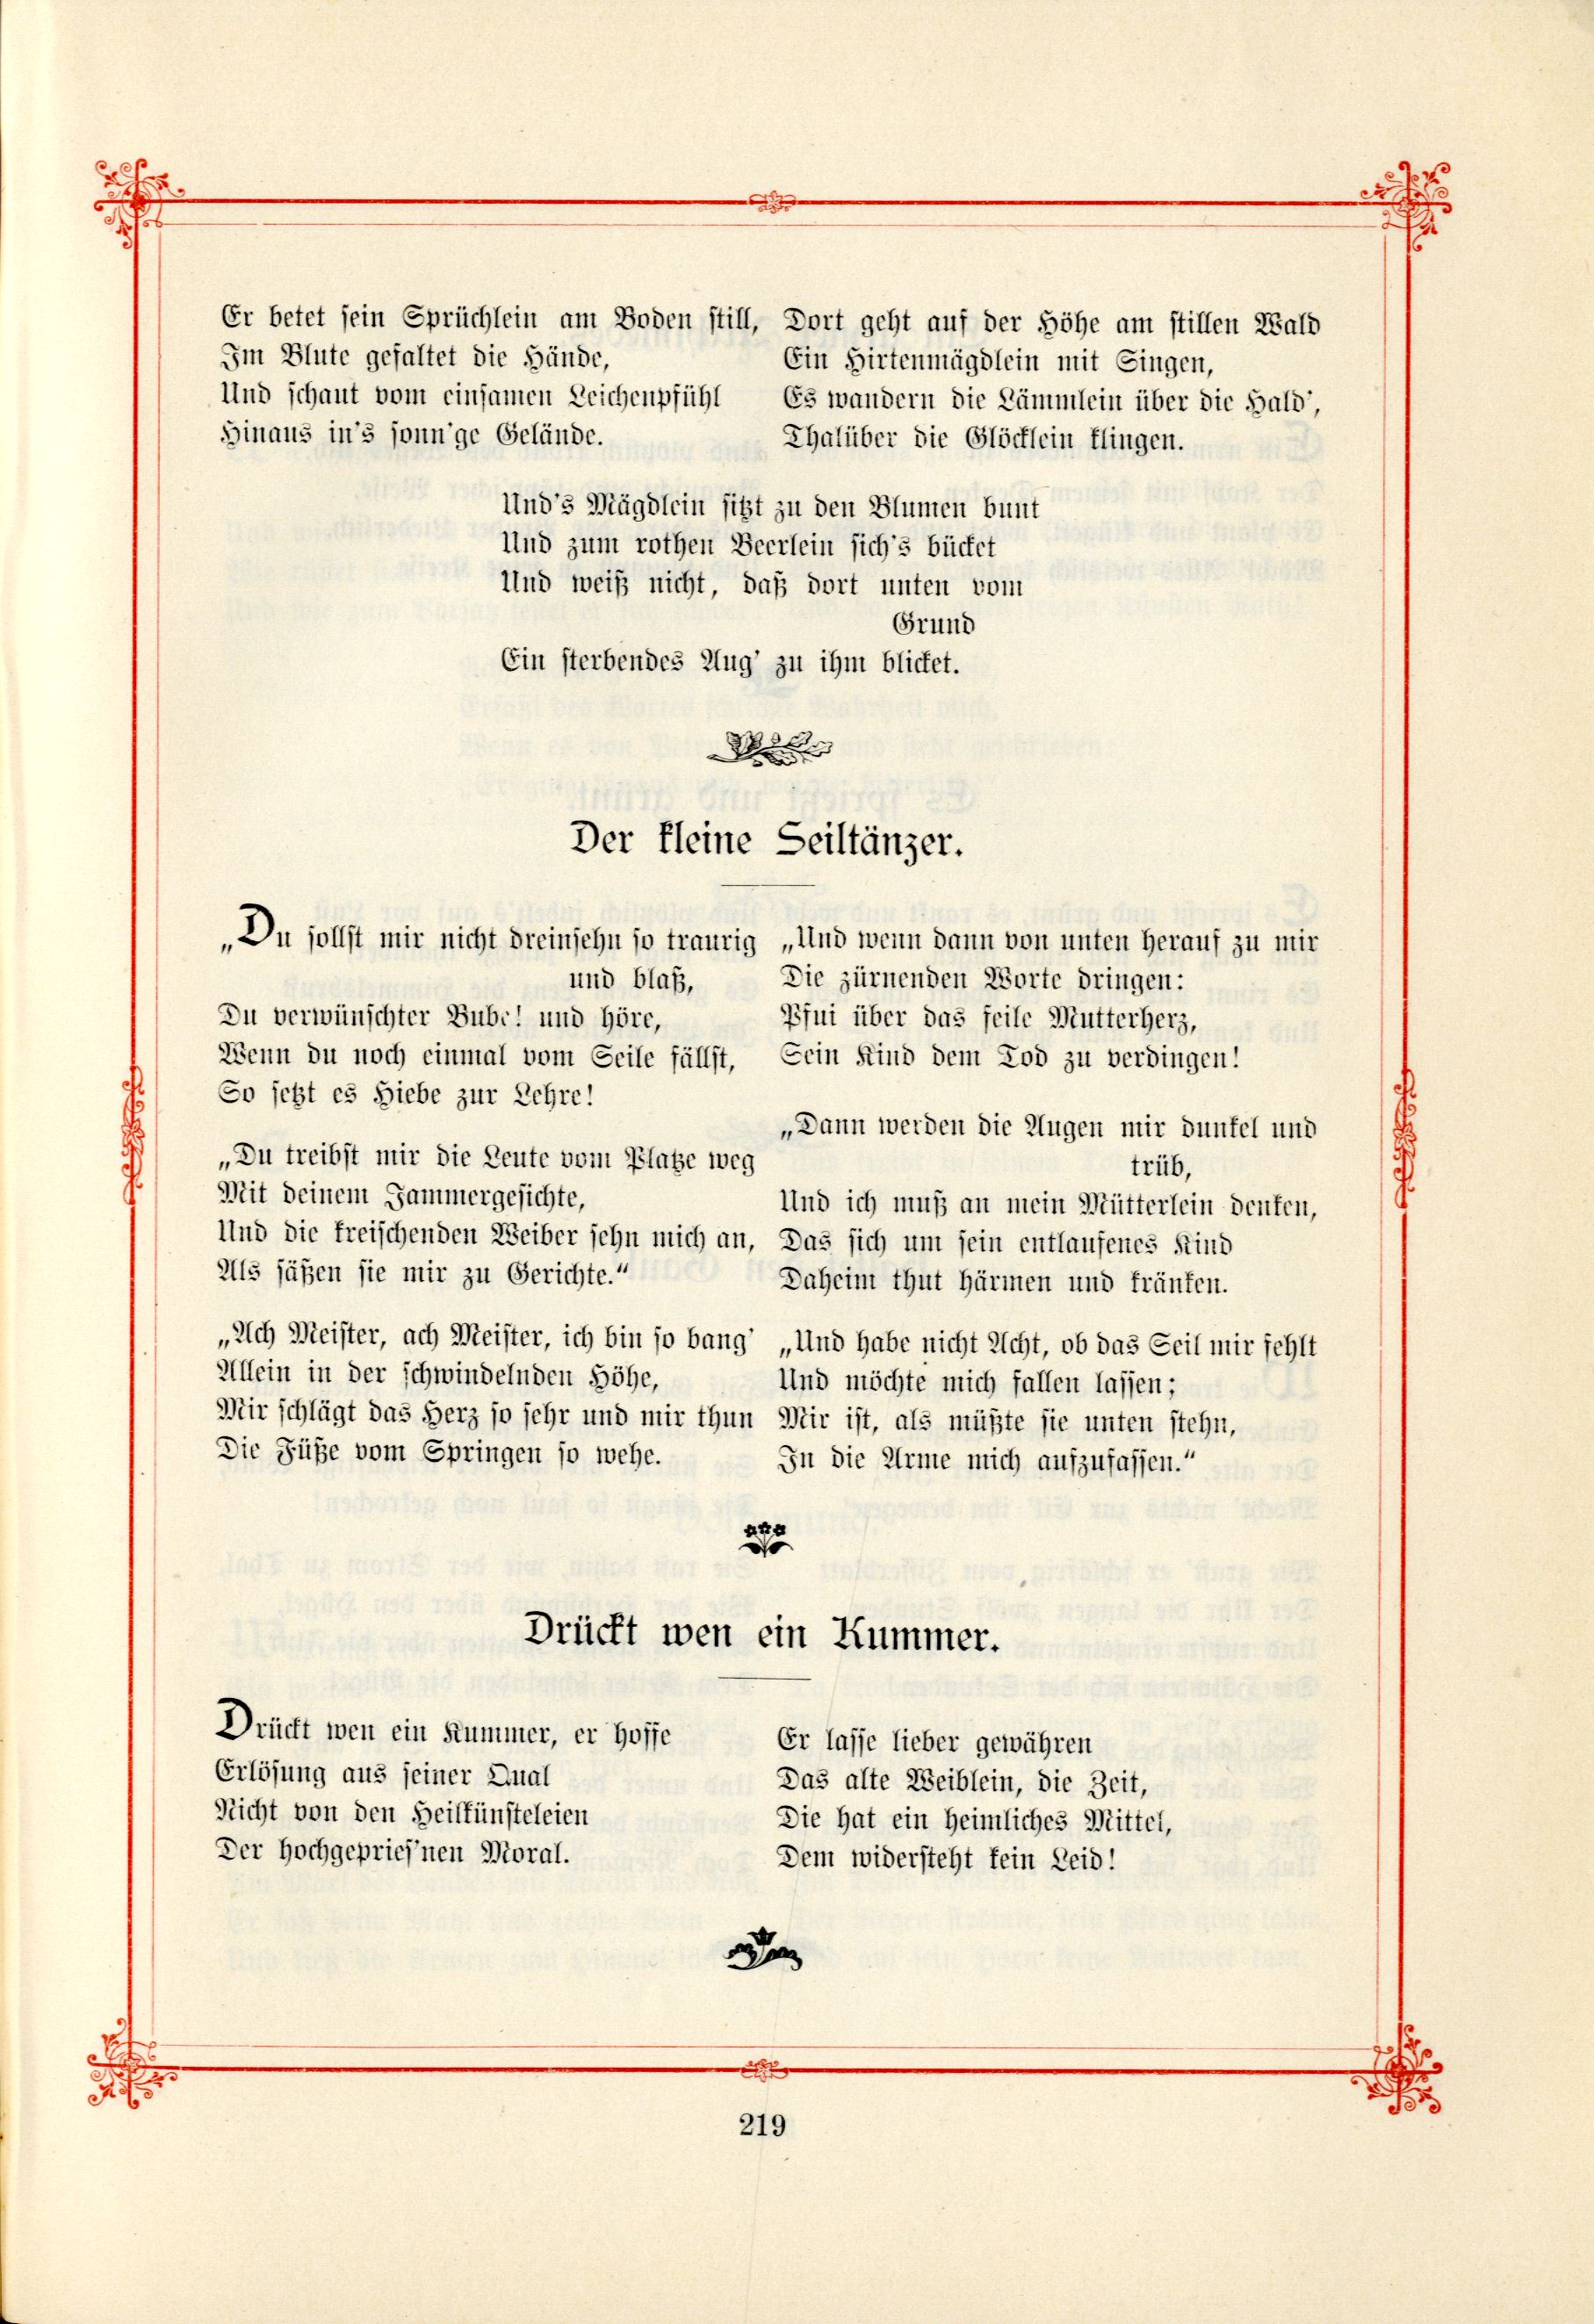 Das Baltische Dichterbuch (1895) | 265. (219) Main body of text